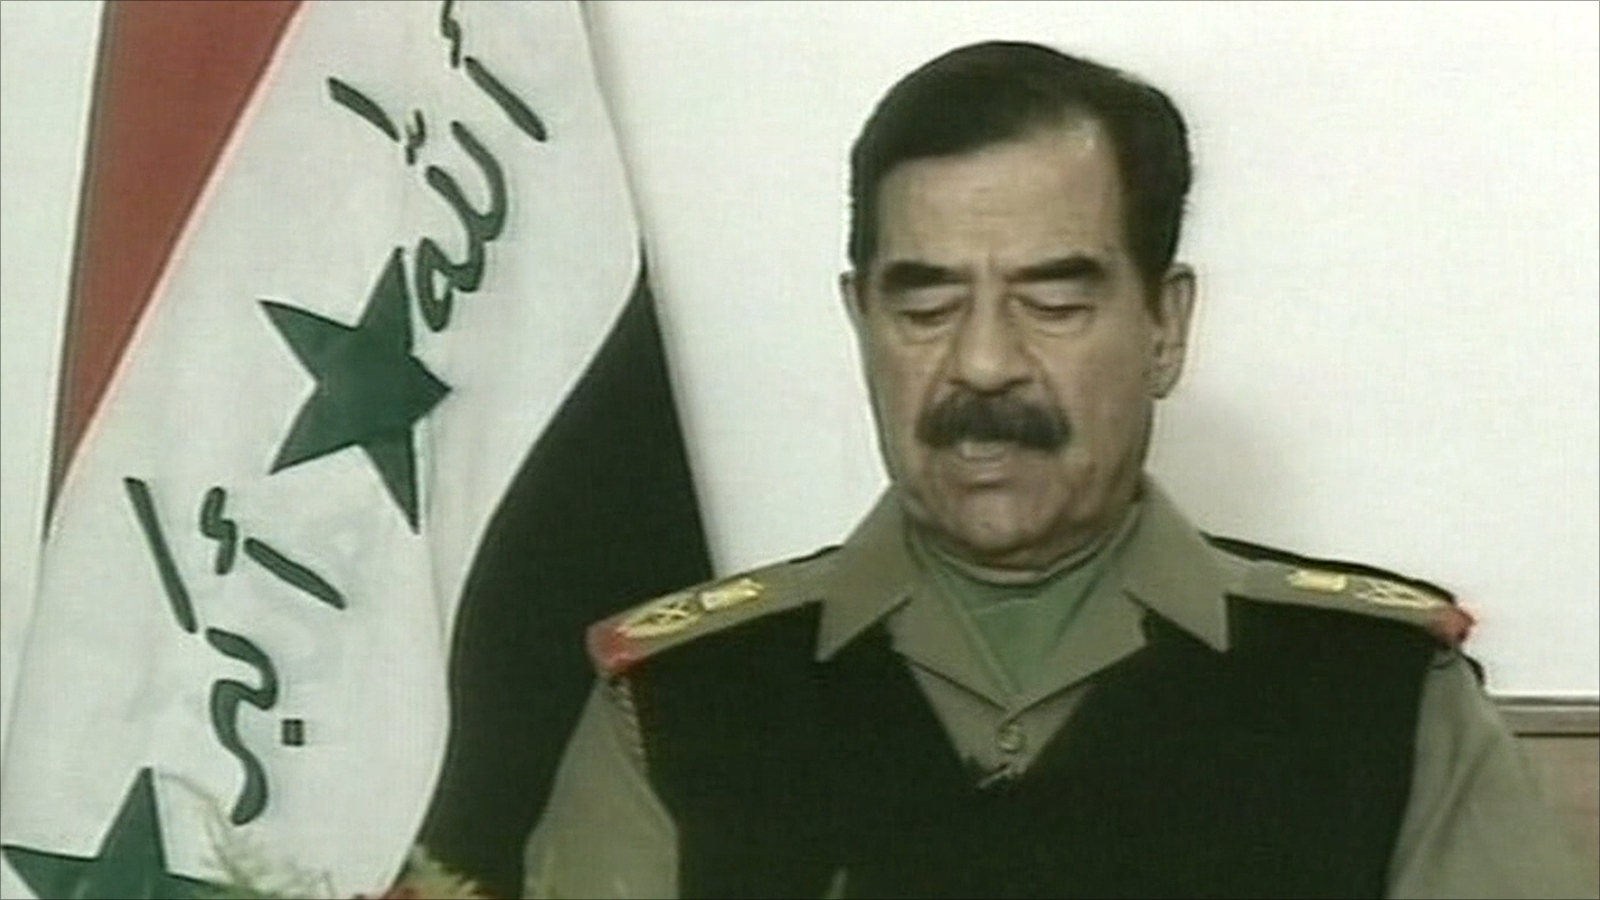 كان صدام حسين أول رئيس عراقي من أصول ريفية، فمن سبقوه كانوا ينتمون إلى بغداد ومدن أخرى، وظل صدام المنحدر من قرية 